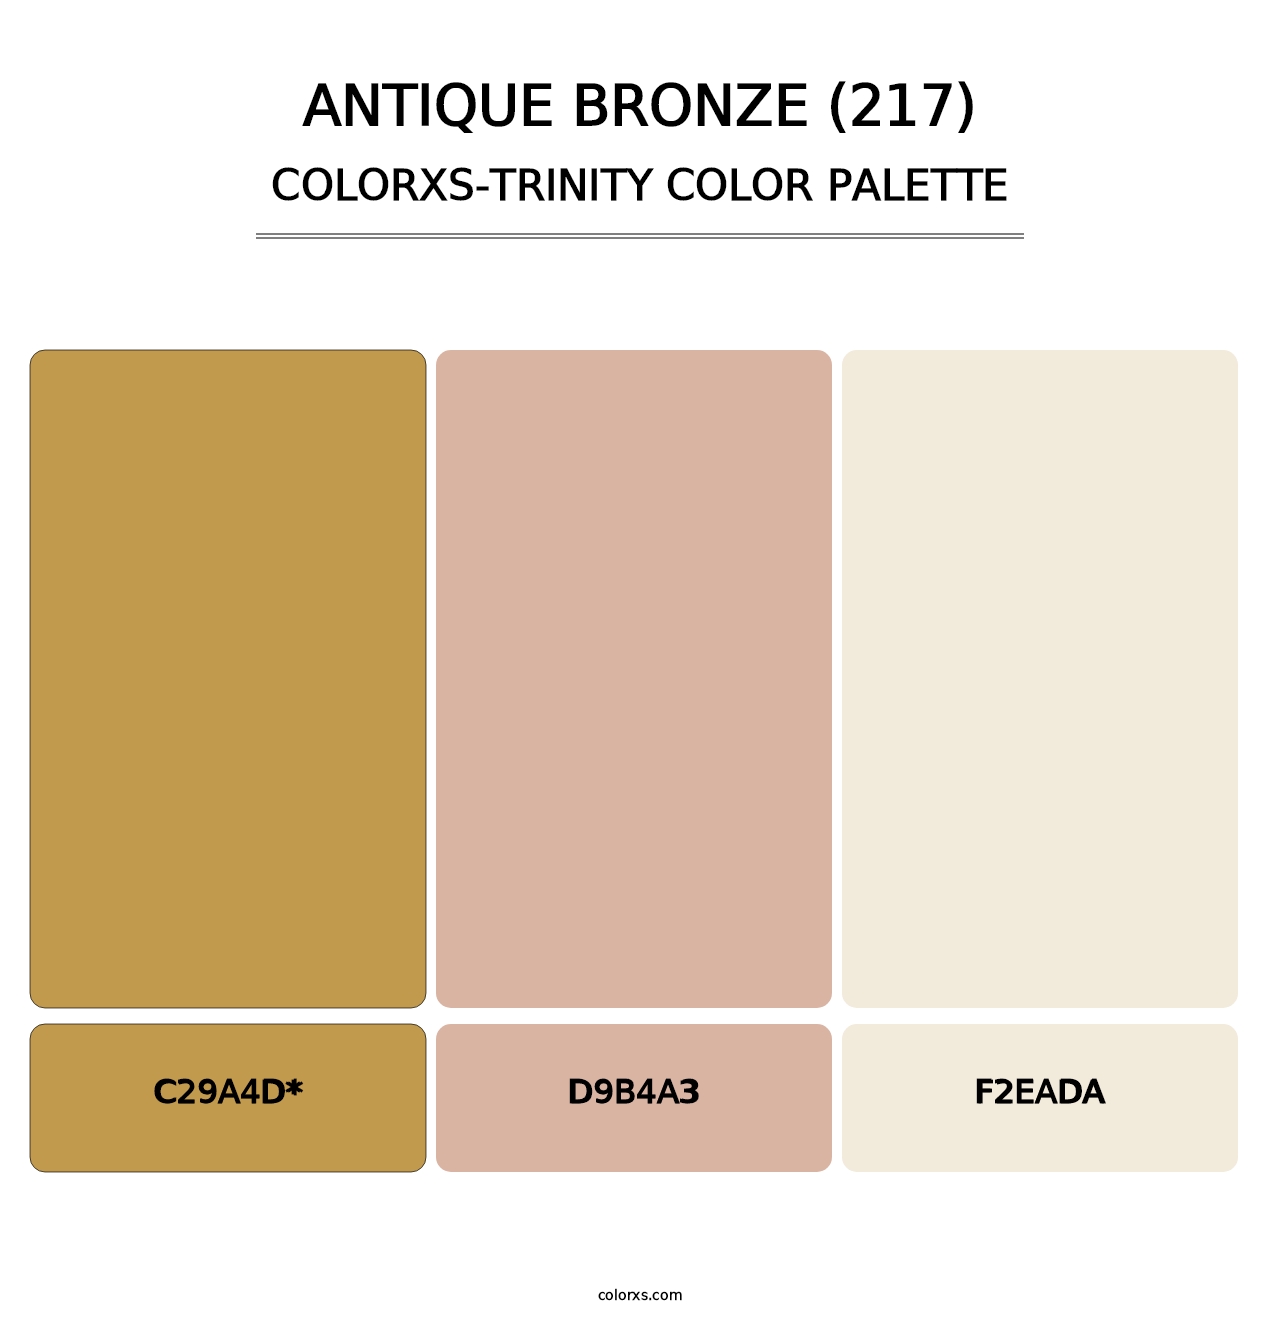 Antique Bronze (217) - Colorxs Trinity Palette